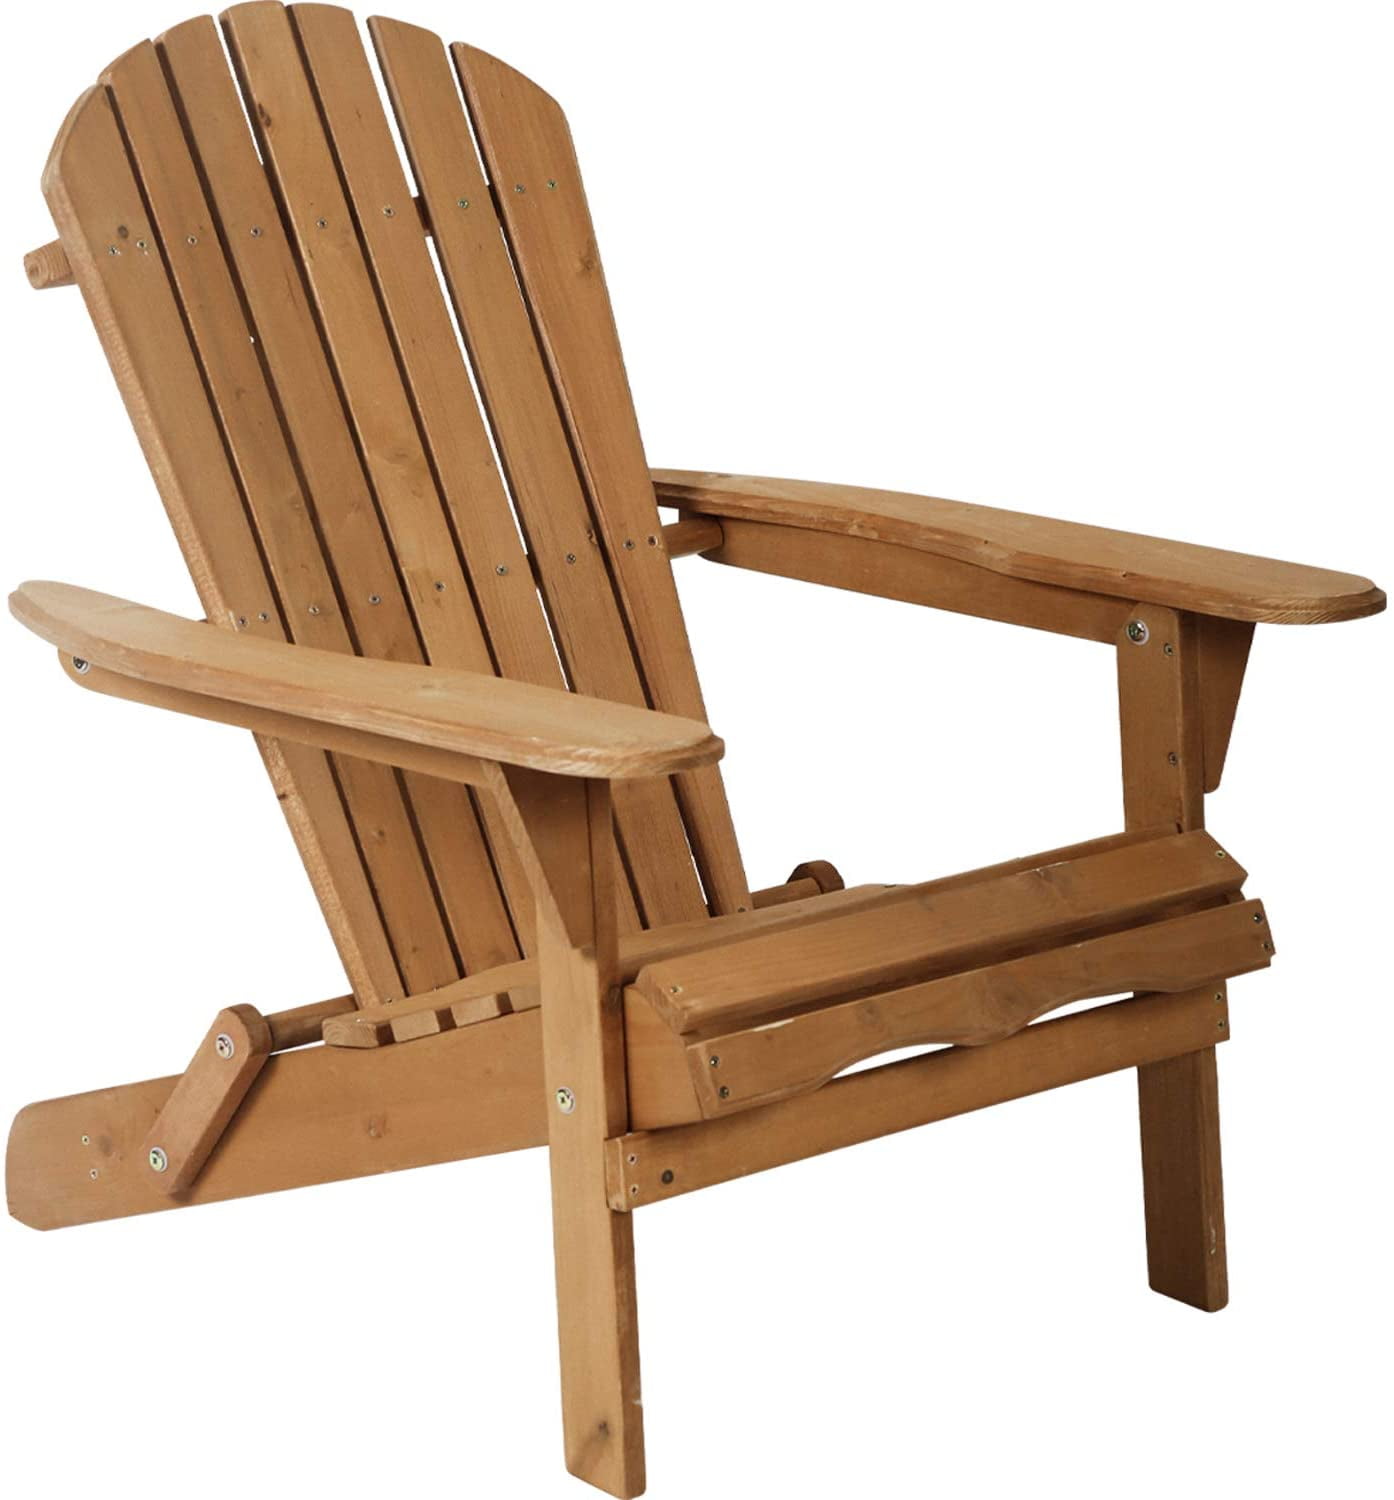 Adirondack Chair Patio Chairs Lawn Chair Folding Adirondack Chair